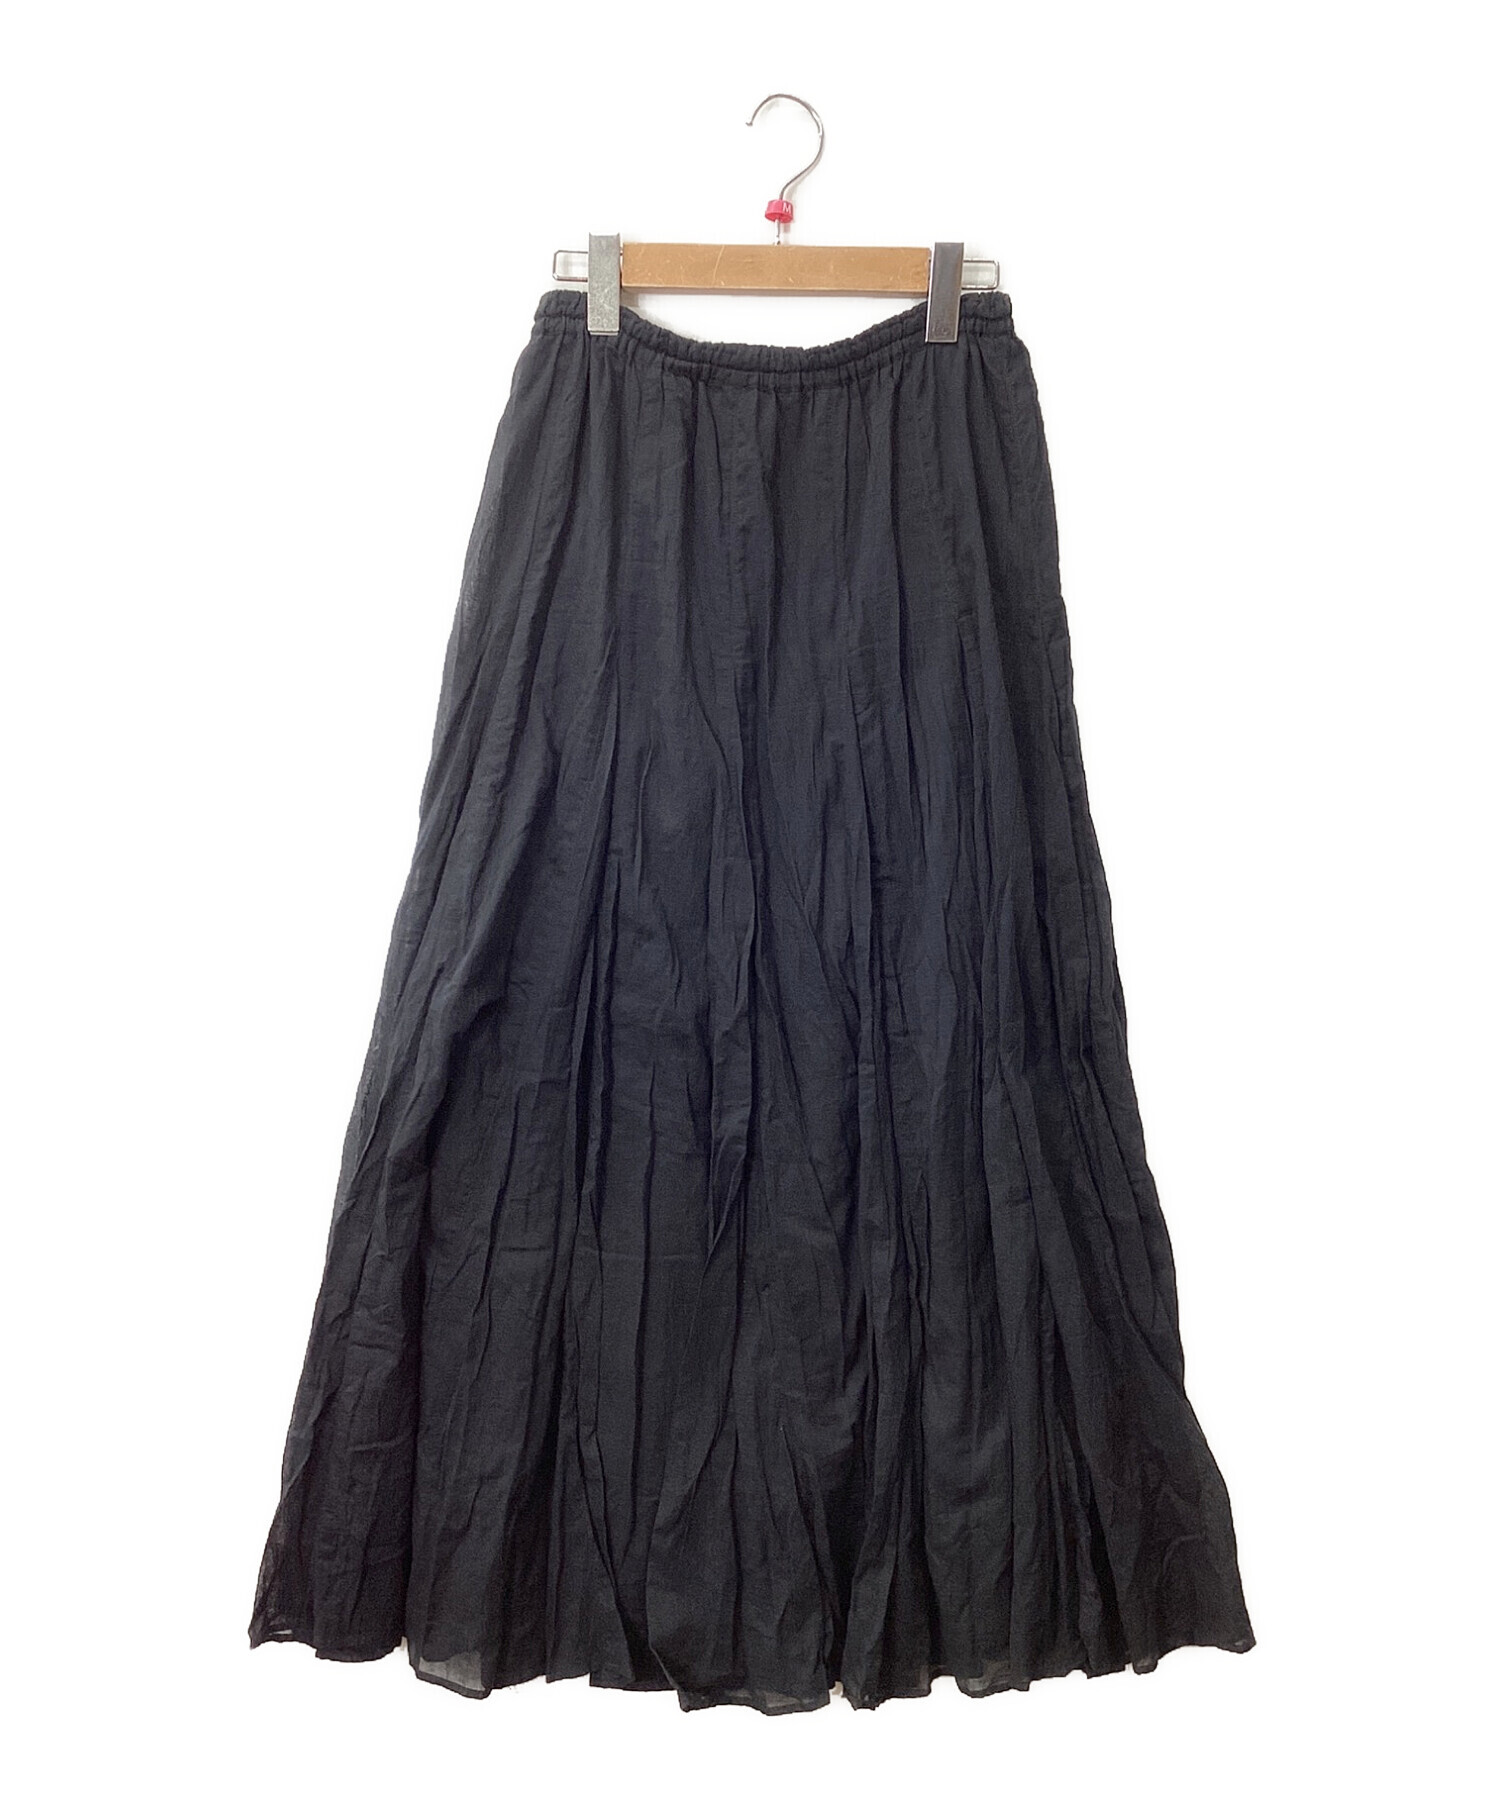 IENA (イエナ) コットンボイルギャザーパネルスカート ブラック サイズ:38